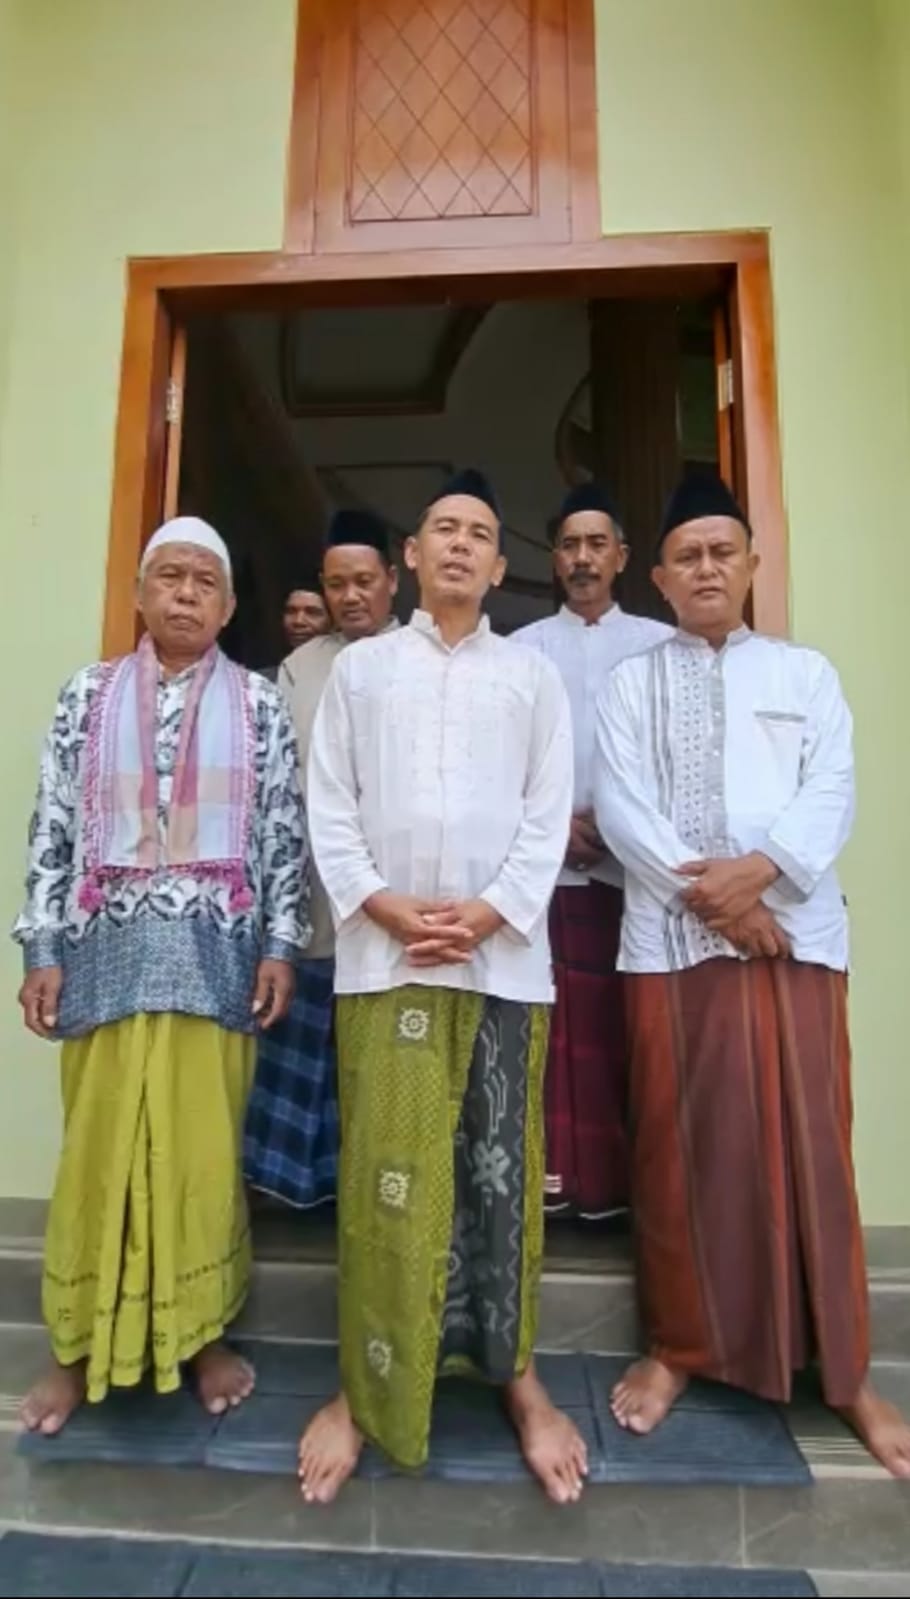 DKM Masjid Sampaikan Terima Kasih Kepada Bupati Nina, 4 Tahun Uang Tukar Guling Pembebasan Lahan Untuk PLTU 2 